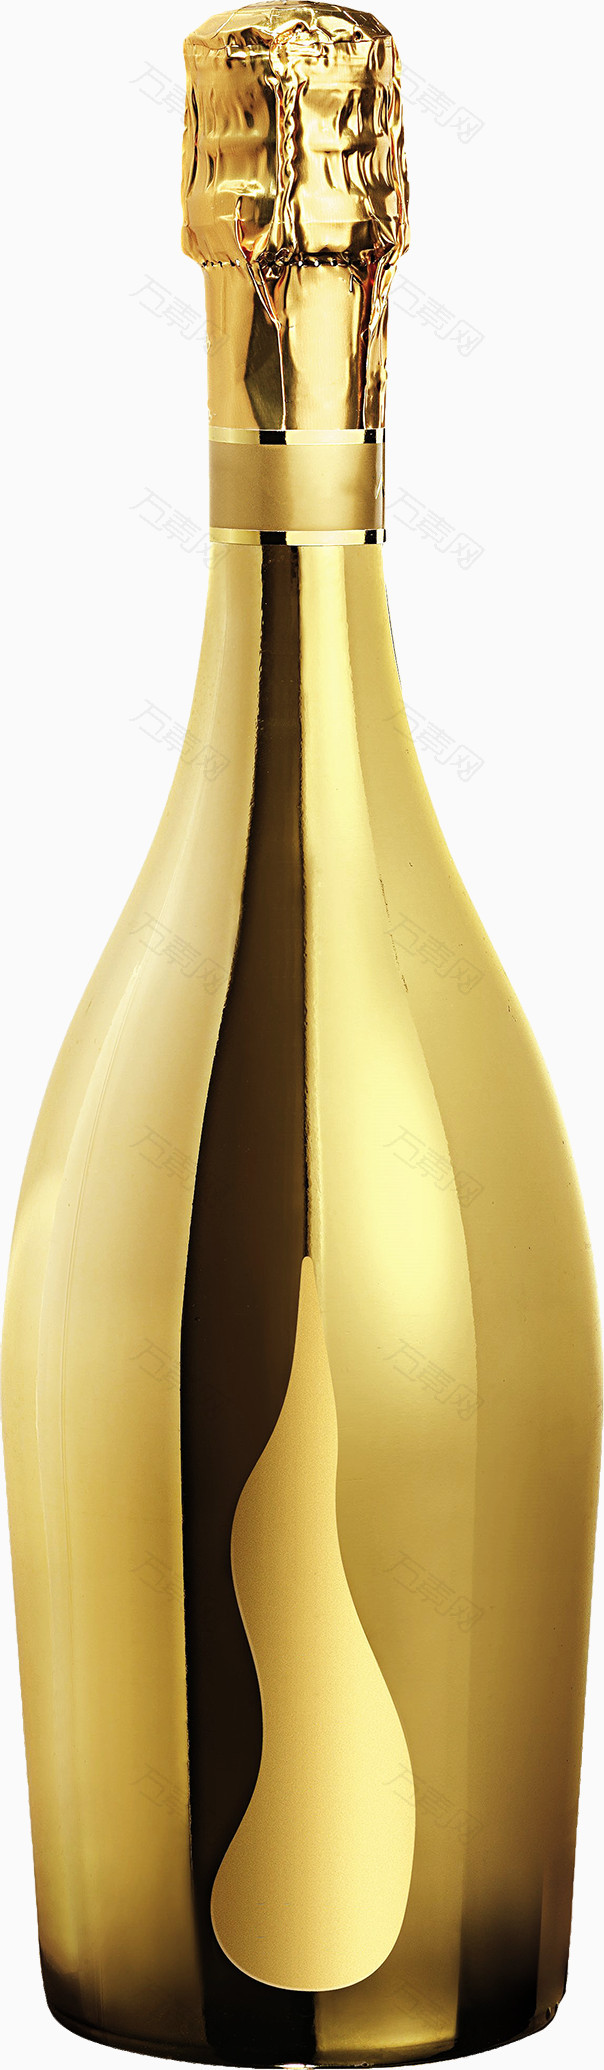 金色香槟酒瓶